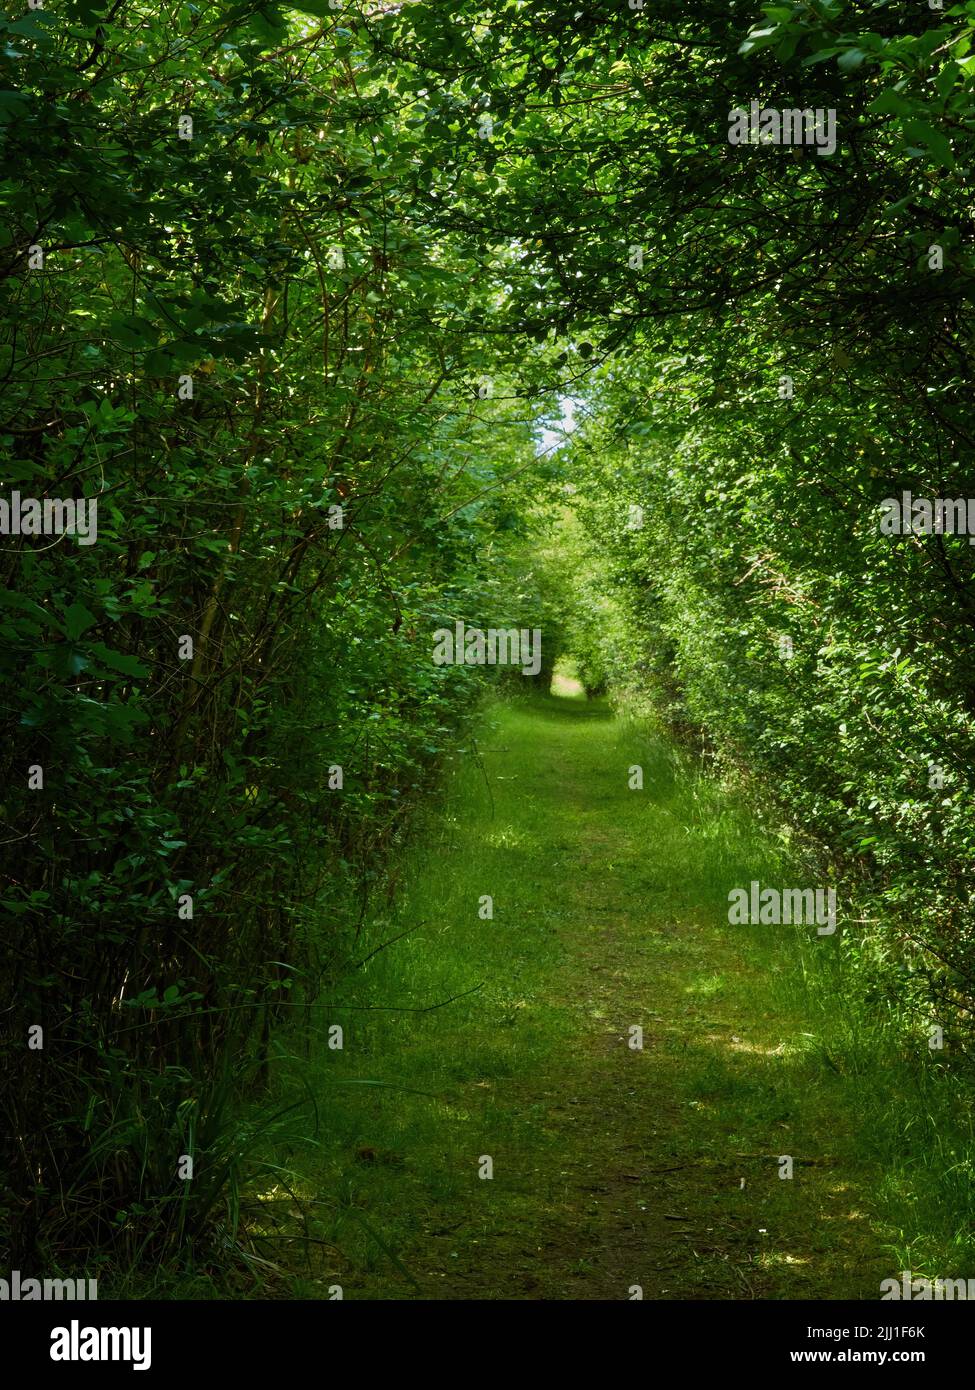 Los árboles que presionan cerca para formar un túnel sobre una avenida del bosque que se extiende apagado en perspectiva decreciente a través de la sombra y de la luz del sol salpicados. Foto de stock